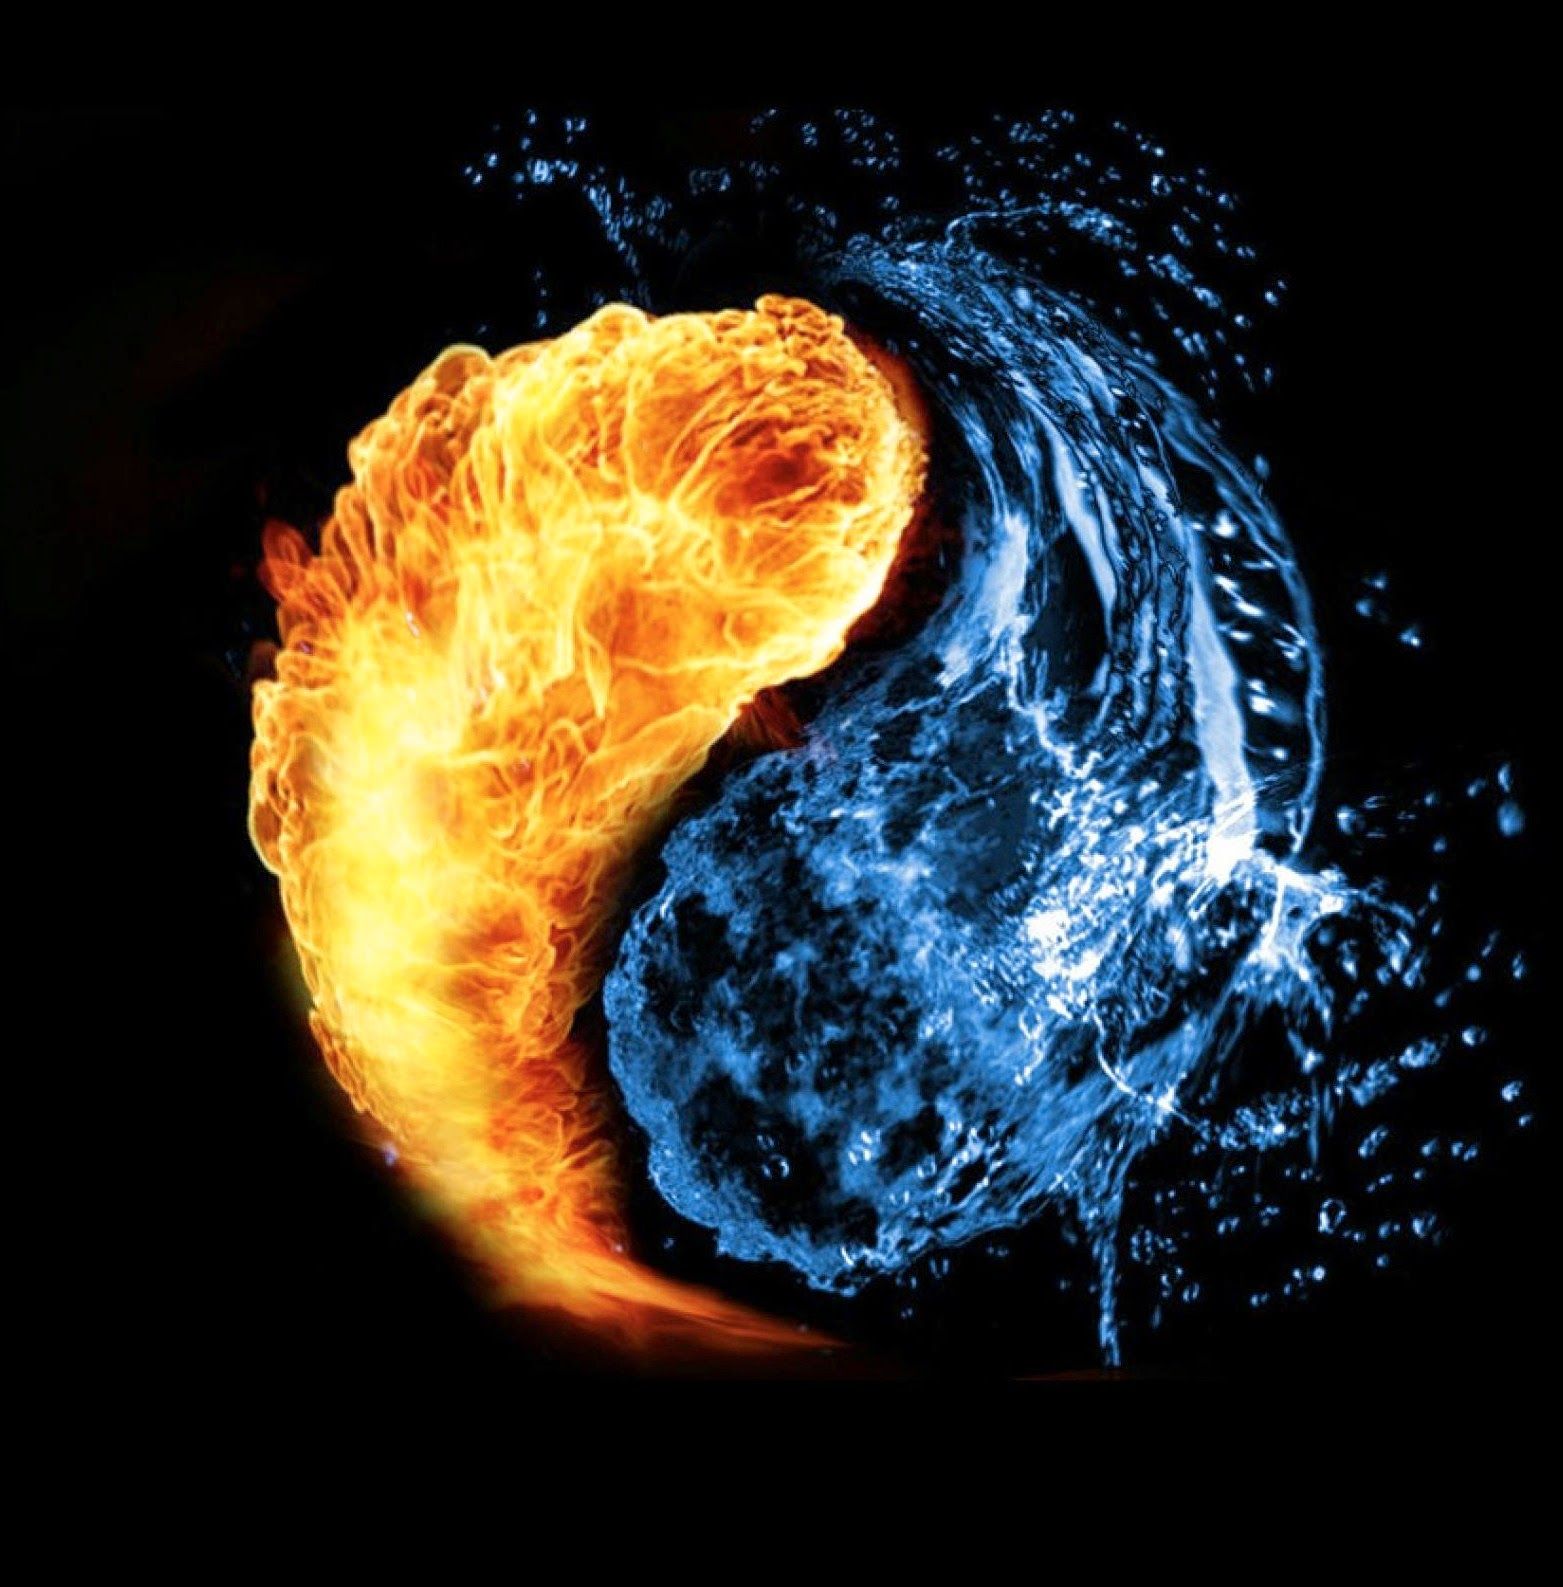 Fire vs water, Yin yang, Fire image